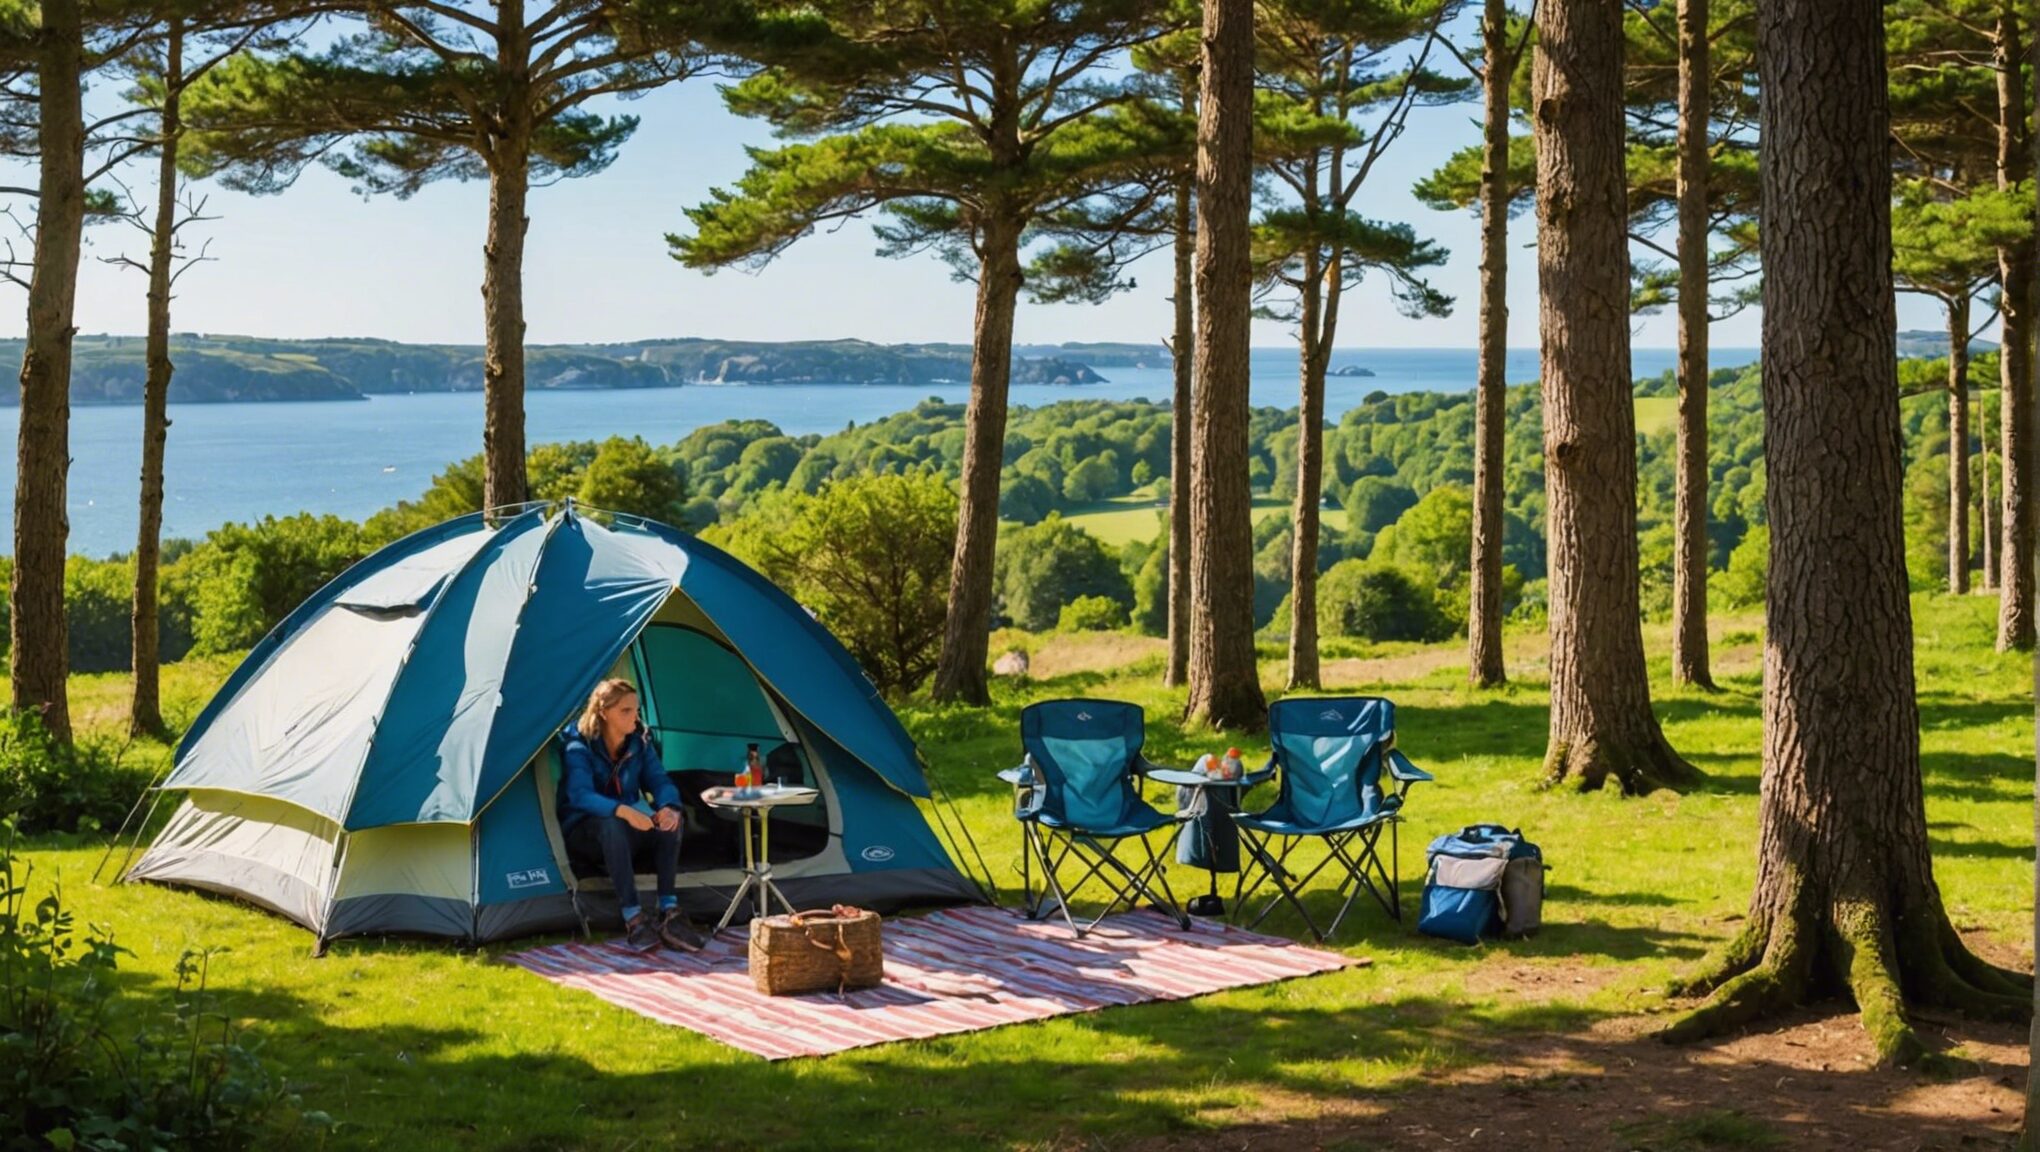 découvrez le secret ultime pour des vacances en camping inoubliables en famille en bretagne avec ce guide complet.